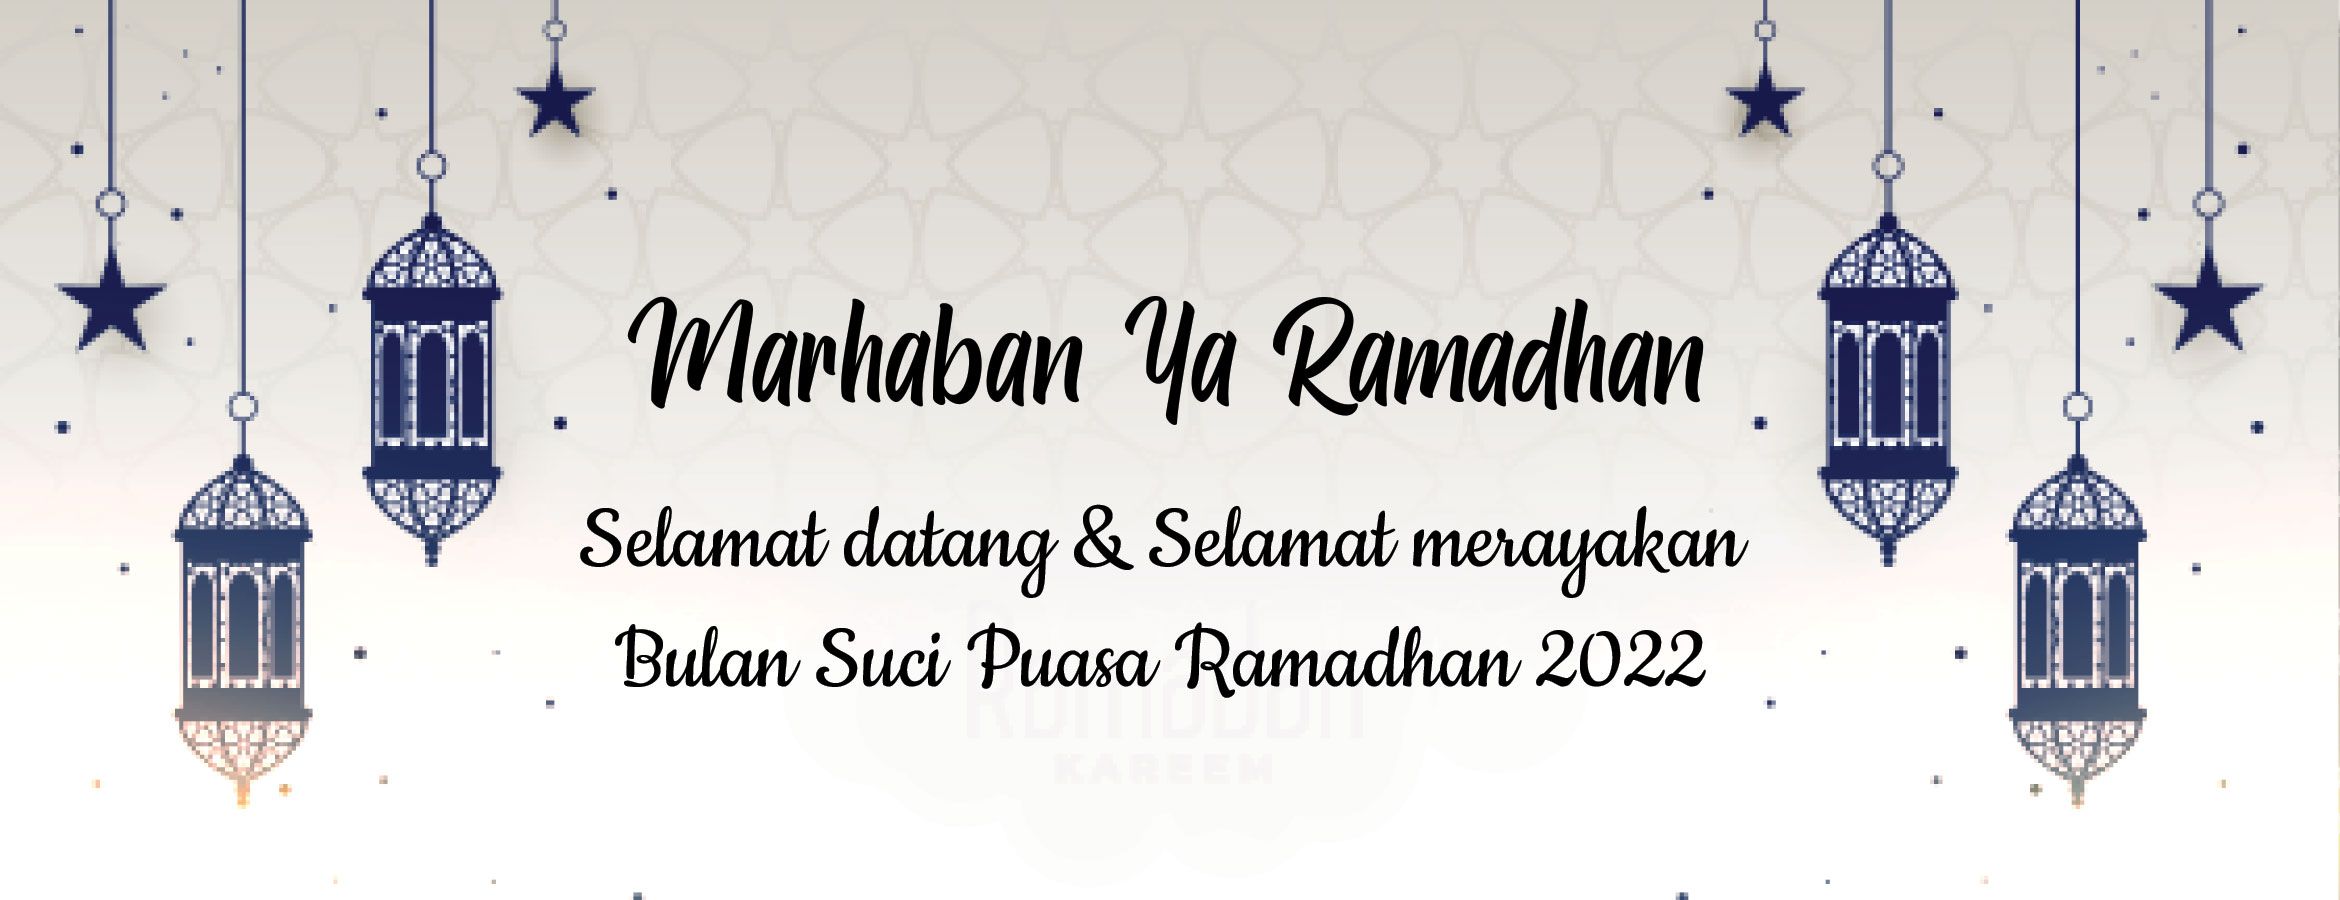 Poster Ramadhan 1443H